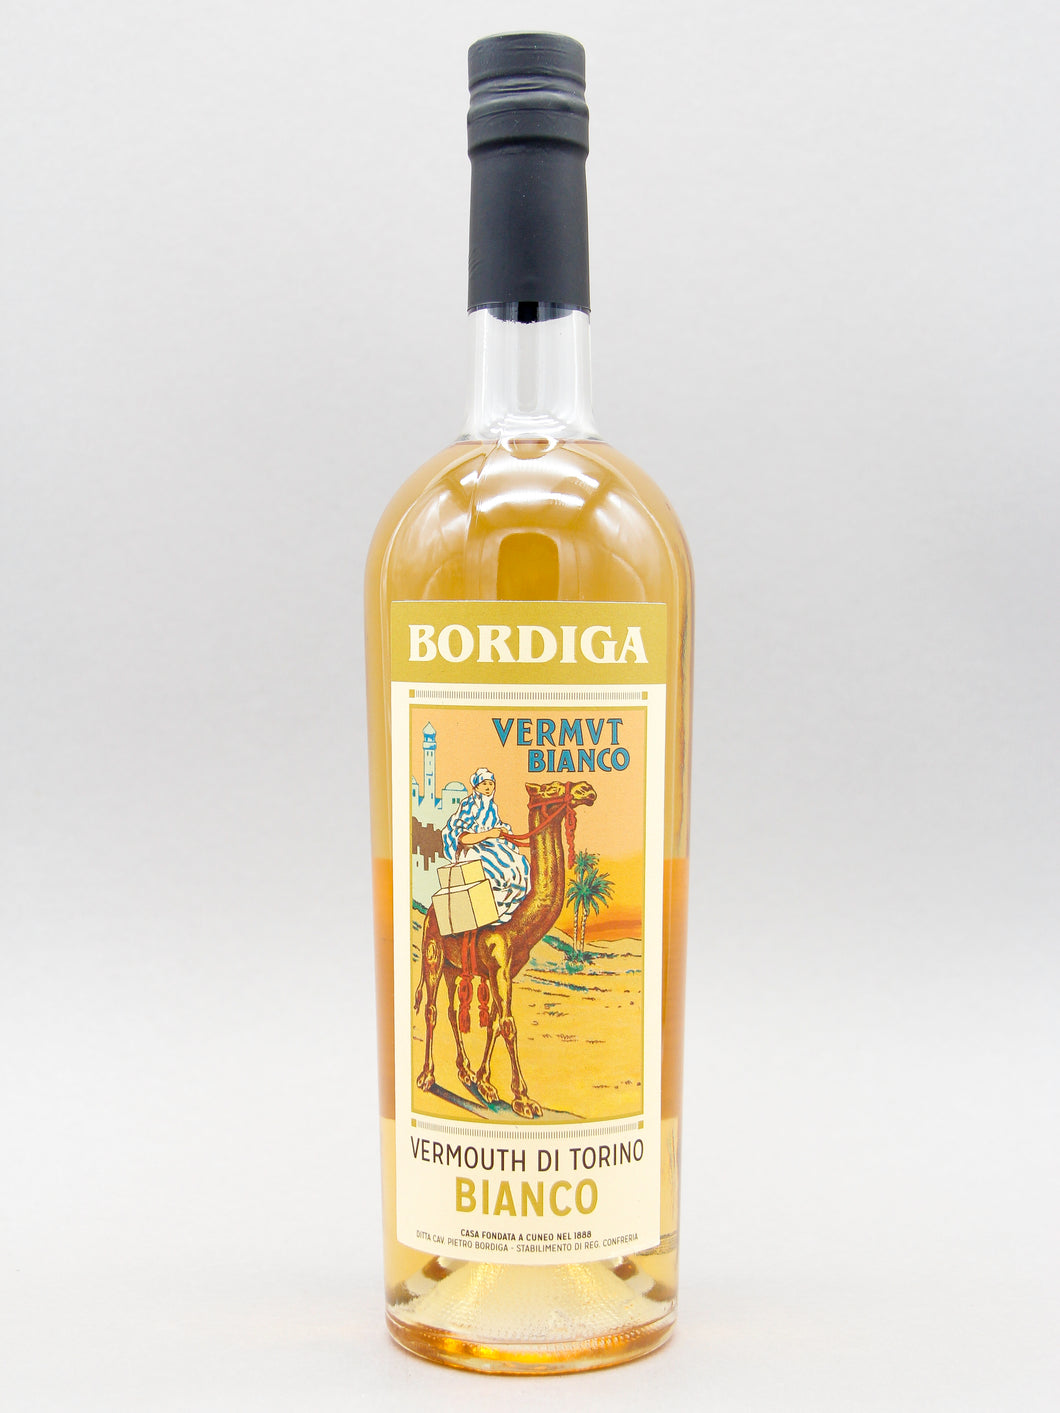 Bordiga Vermouth Di Torino Bianco, Italy (18%, 75cl)